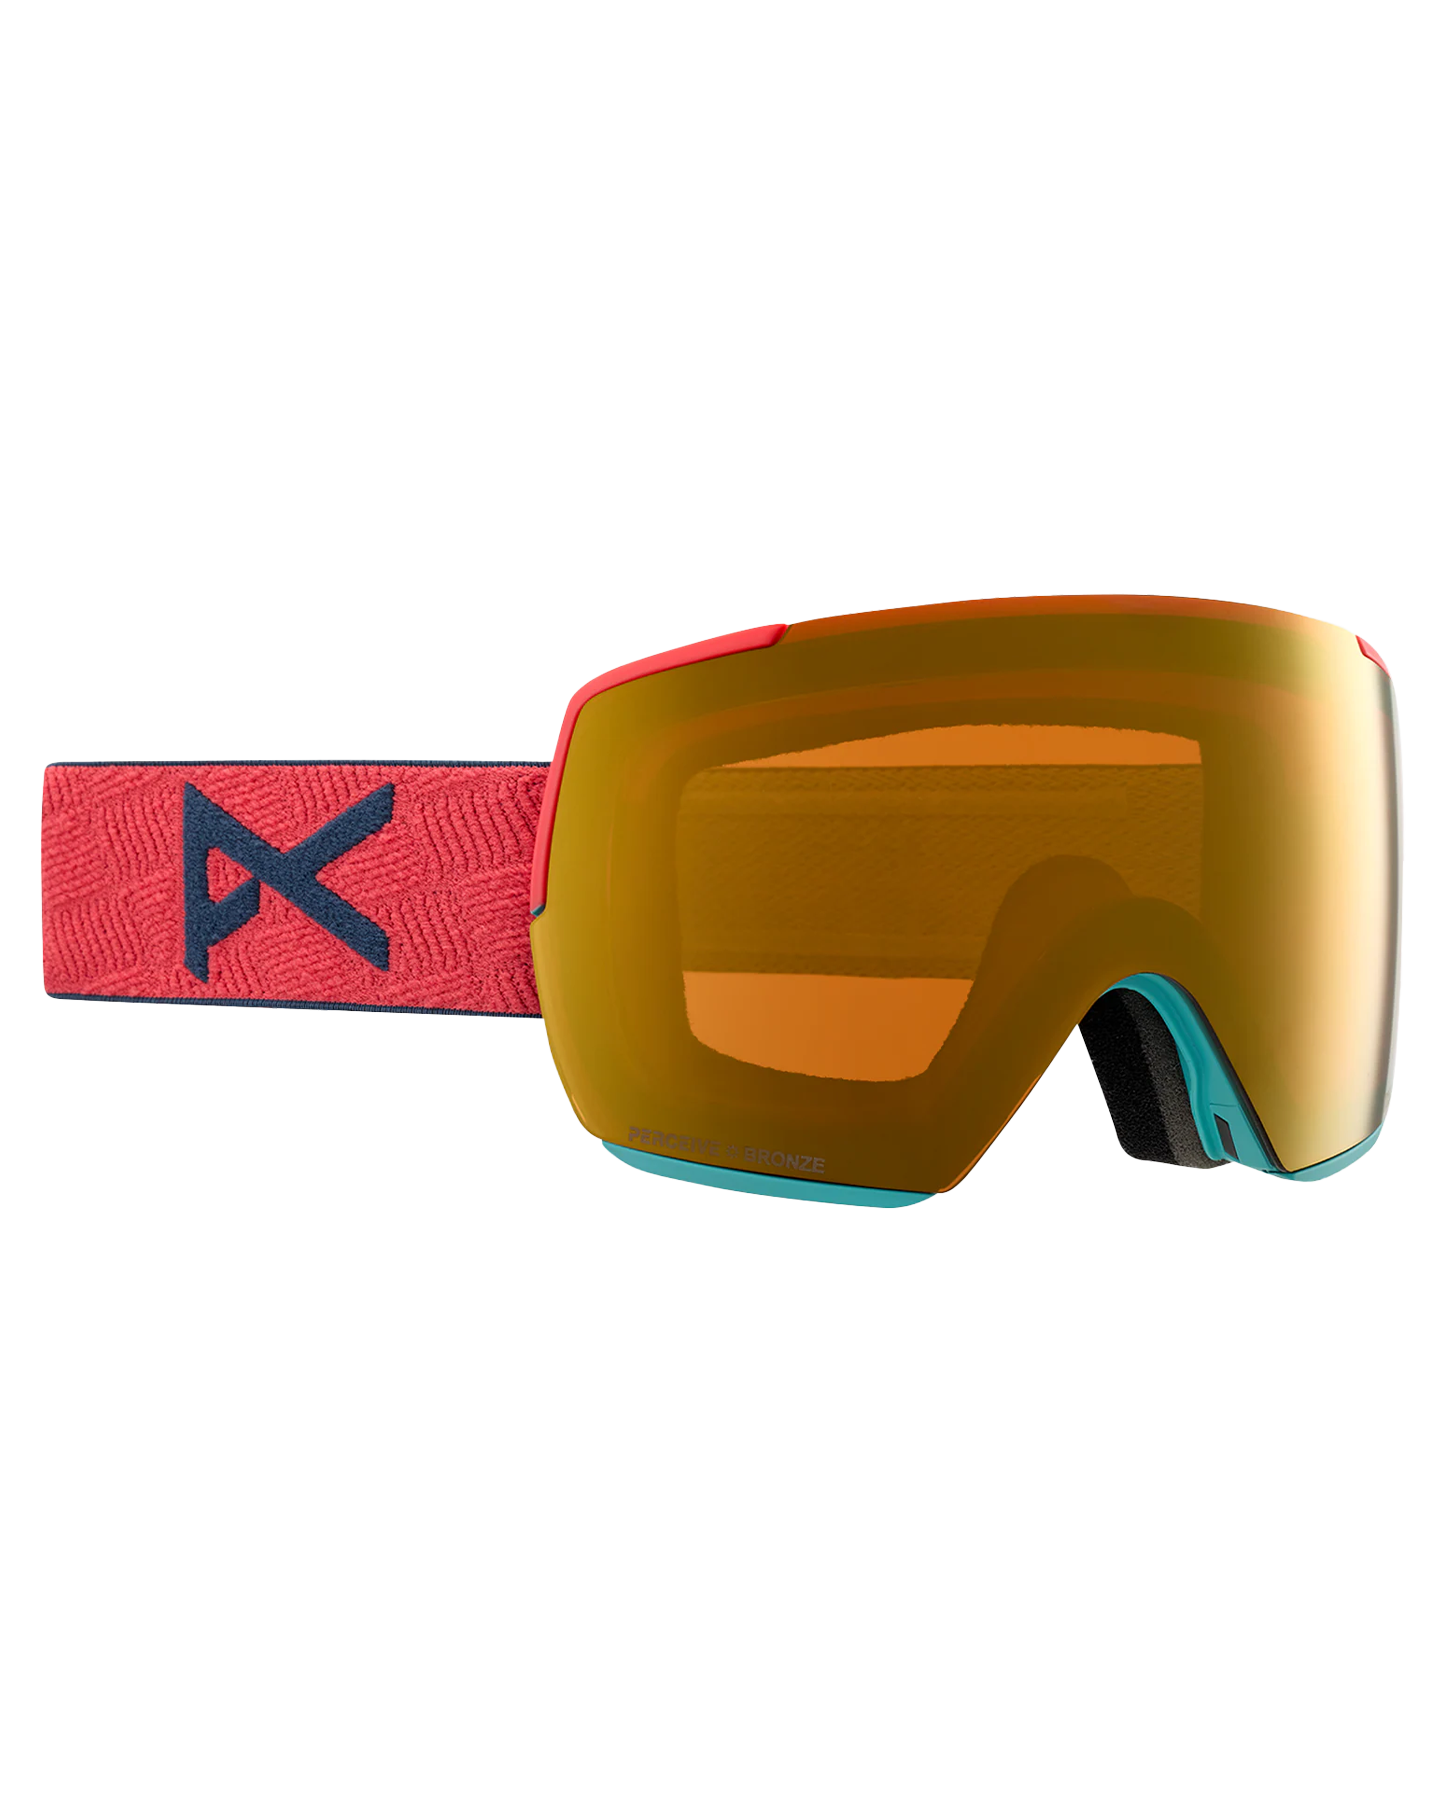 Anon M5S Snow Goggles - Coral/Perceive Sunny Bronze Lens Snow Goggles - Mens - Trojan Wake Ski Snow